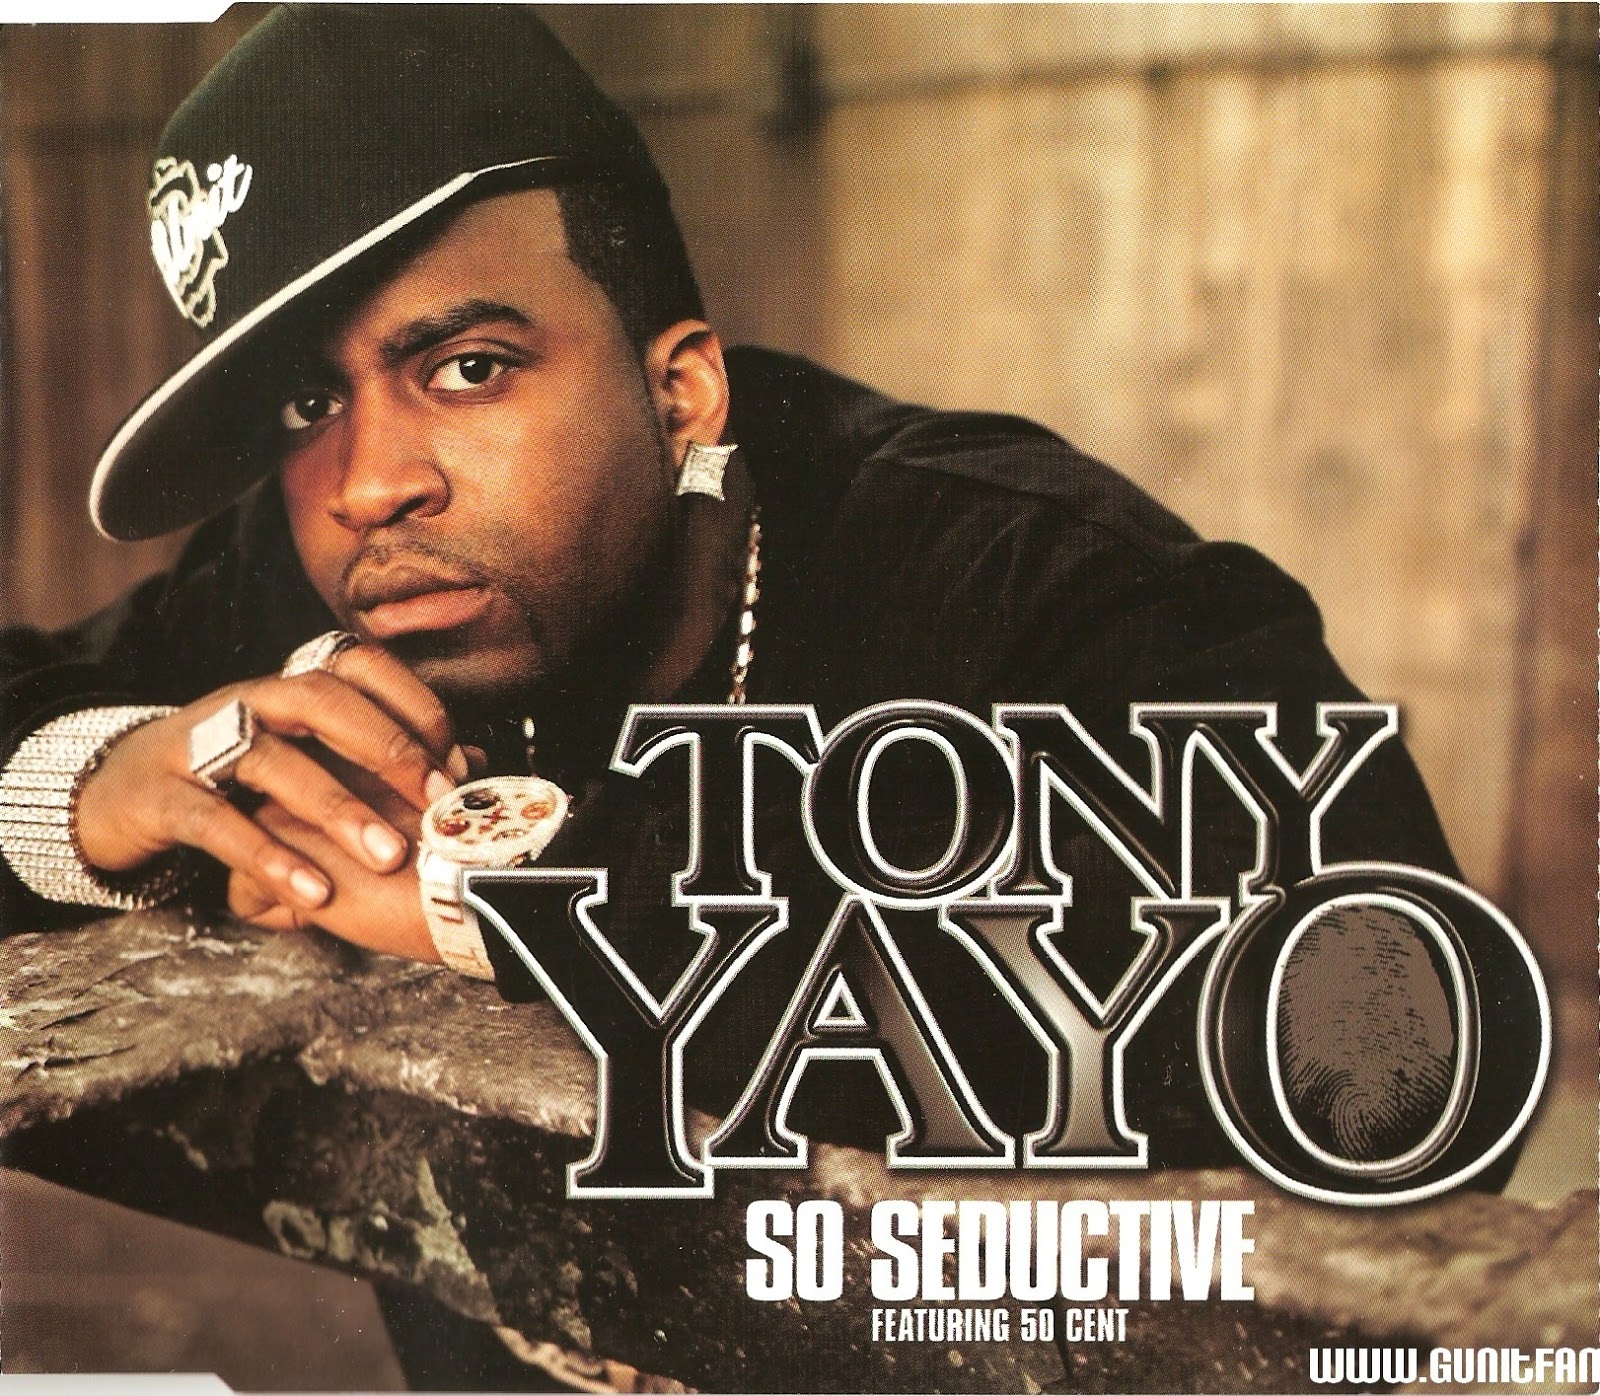 Tony Yayo - So Seductive (CDS) (2005) (320 kbps)